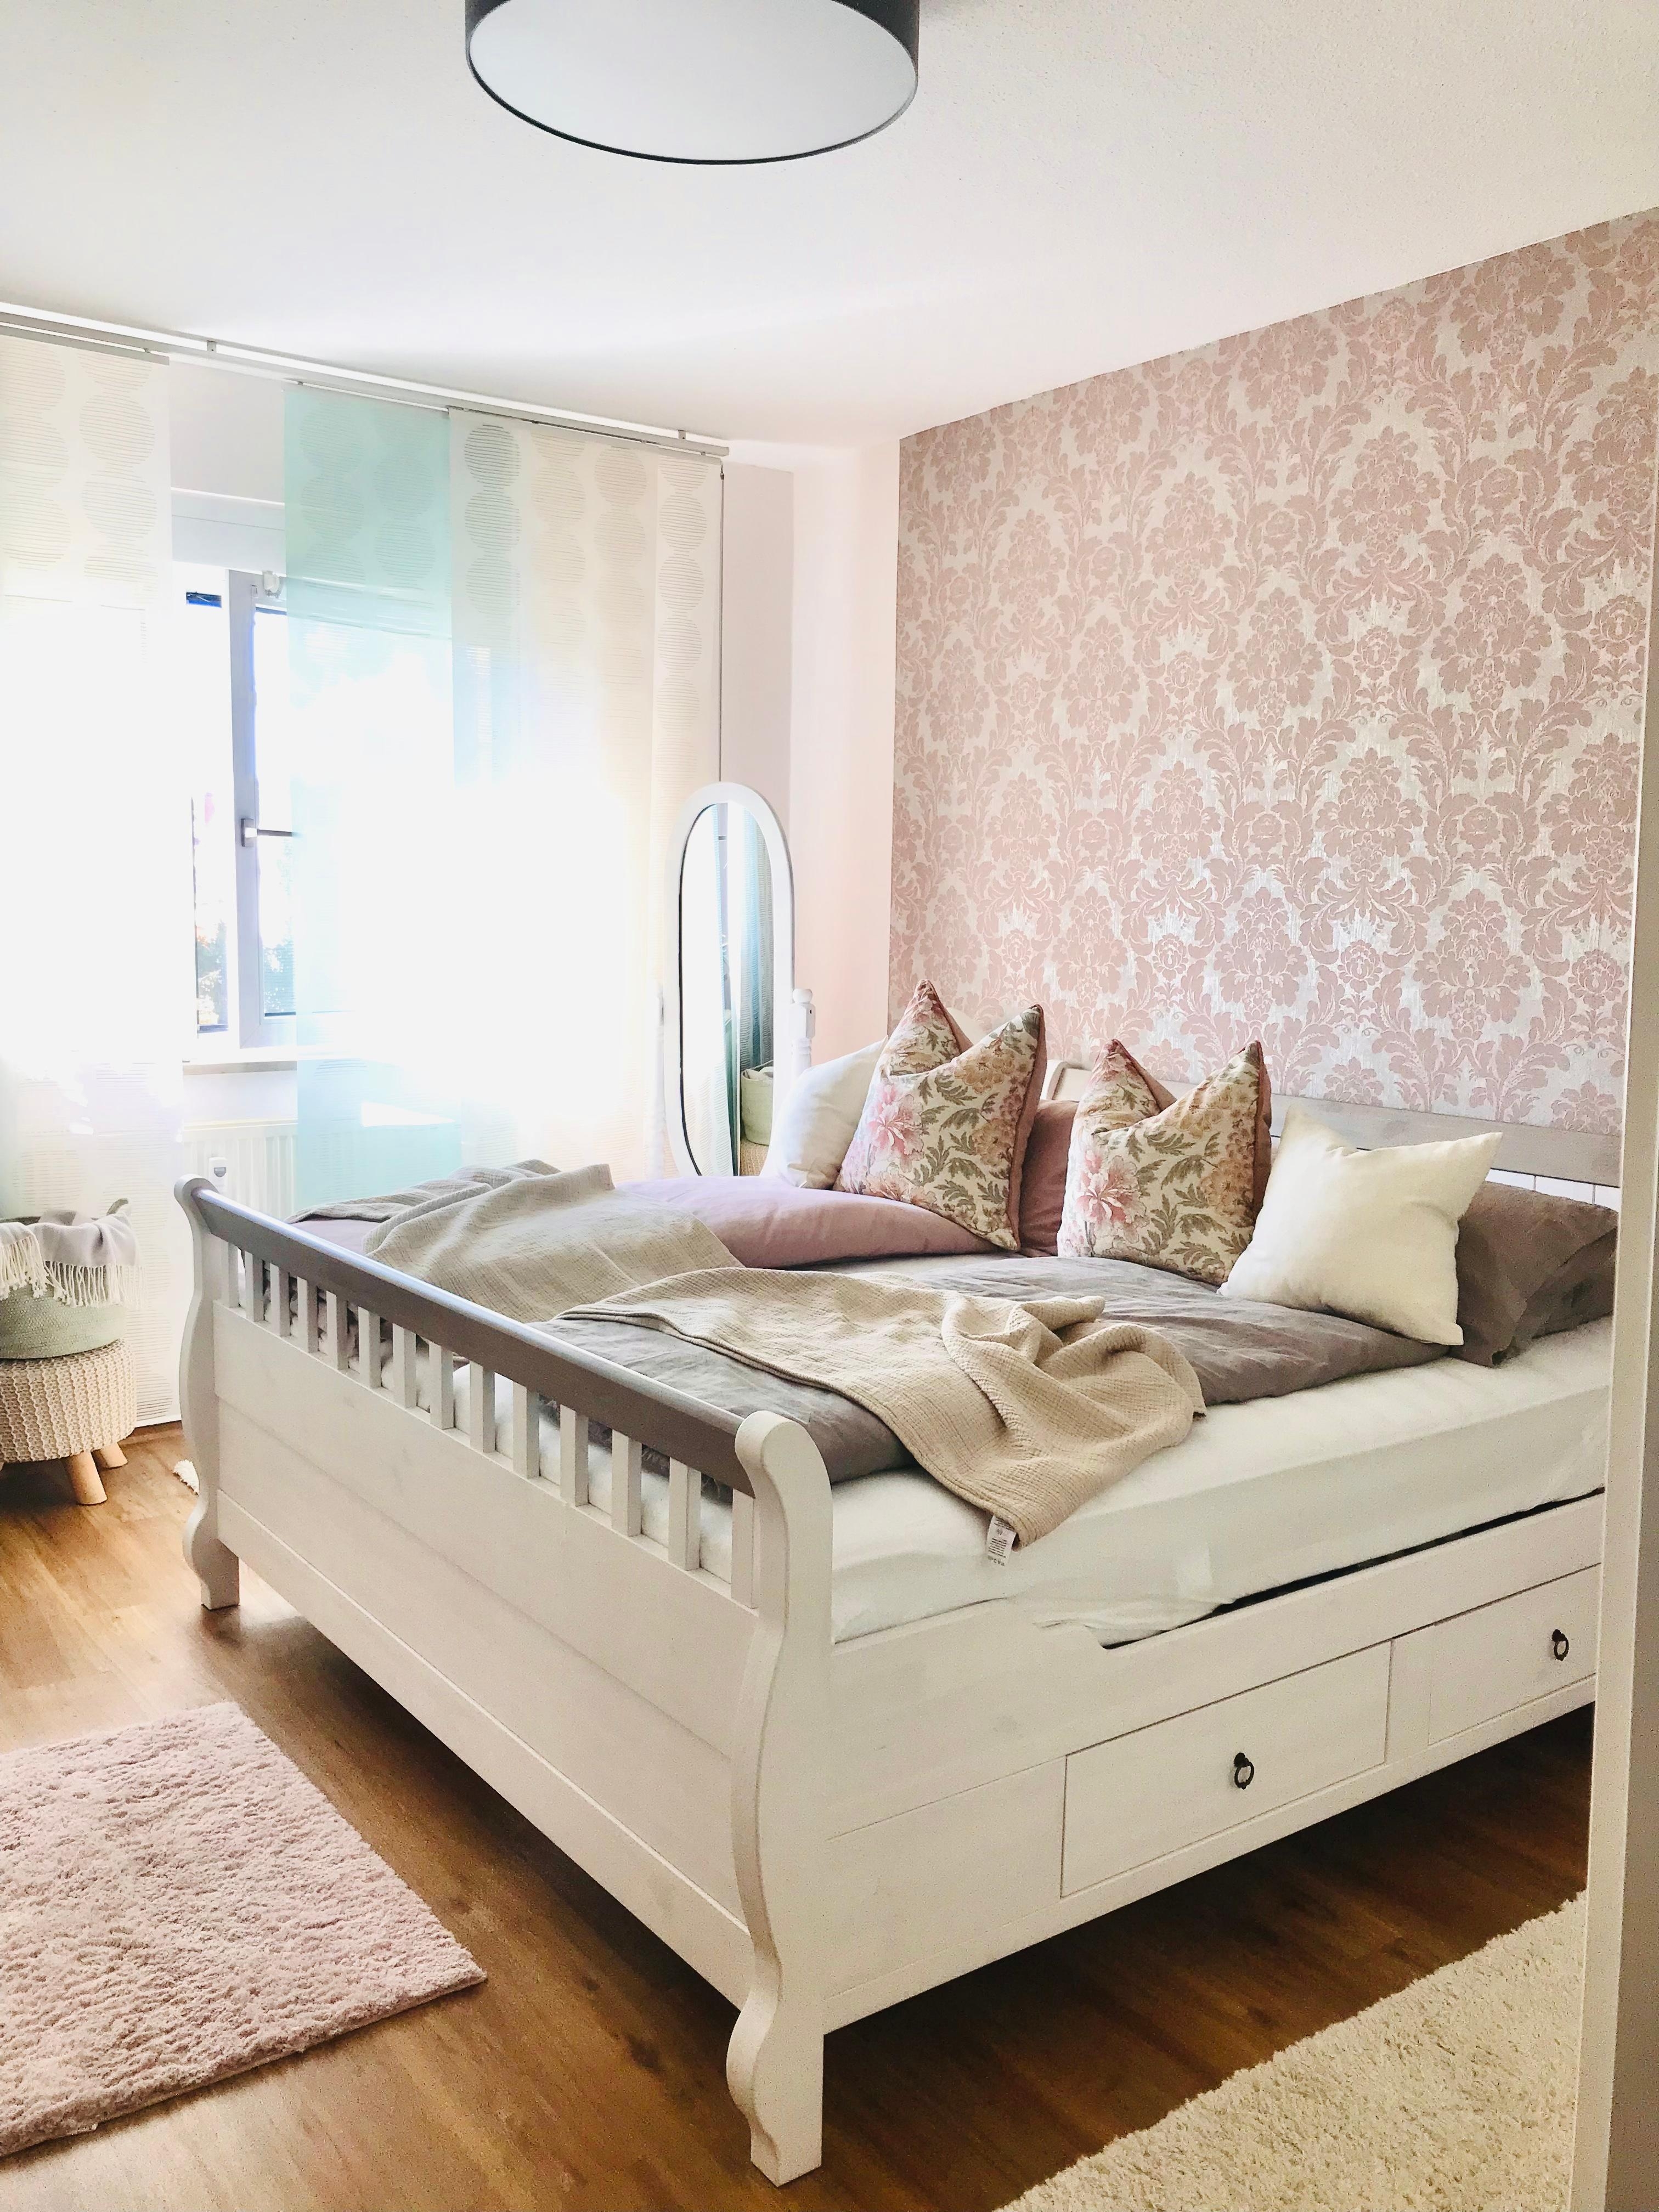 Schlafzimmer liebe 💓 
#holiday #zuhause #cozyplace #kissen #decke #holzbett #tapete 